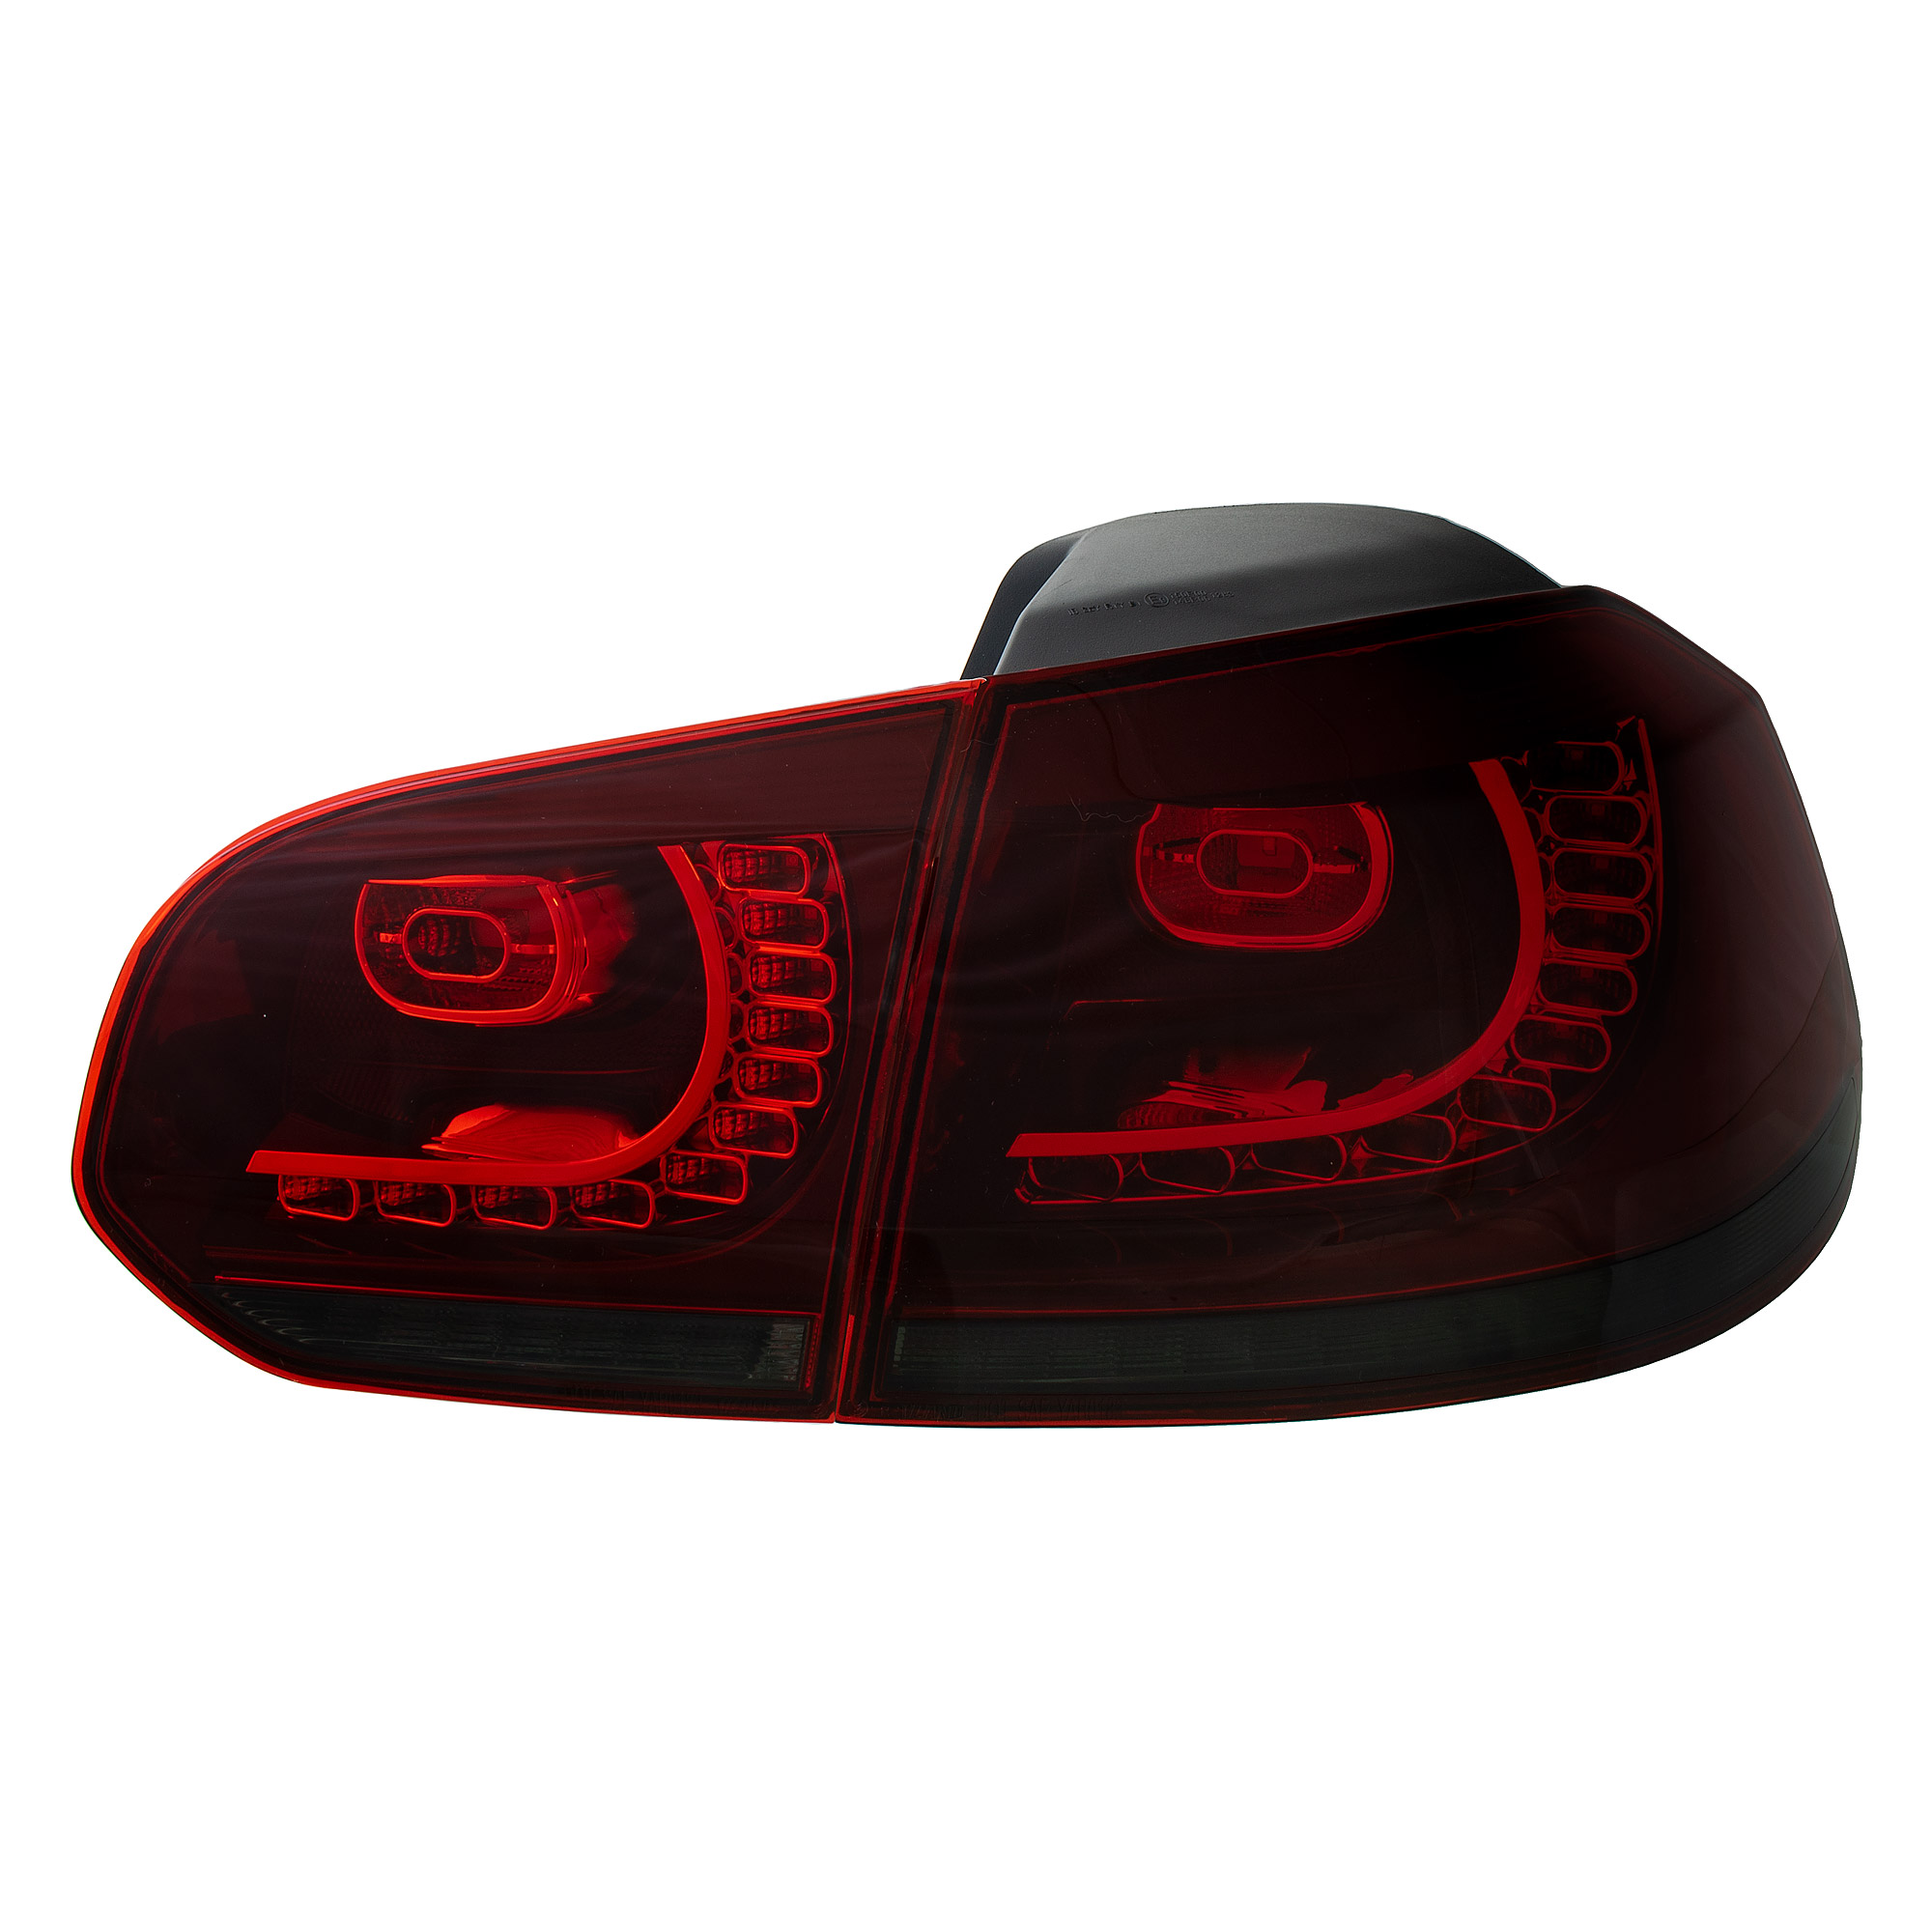 LED Rückleuchten dynamisch Blinker für VW Golf 6 Bj. 08-13 Klarglas kirschrot